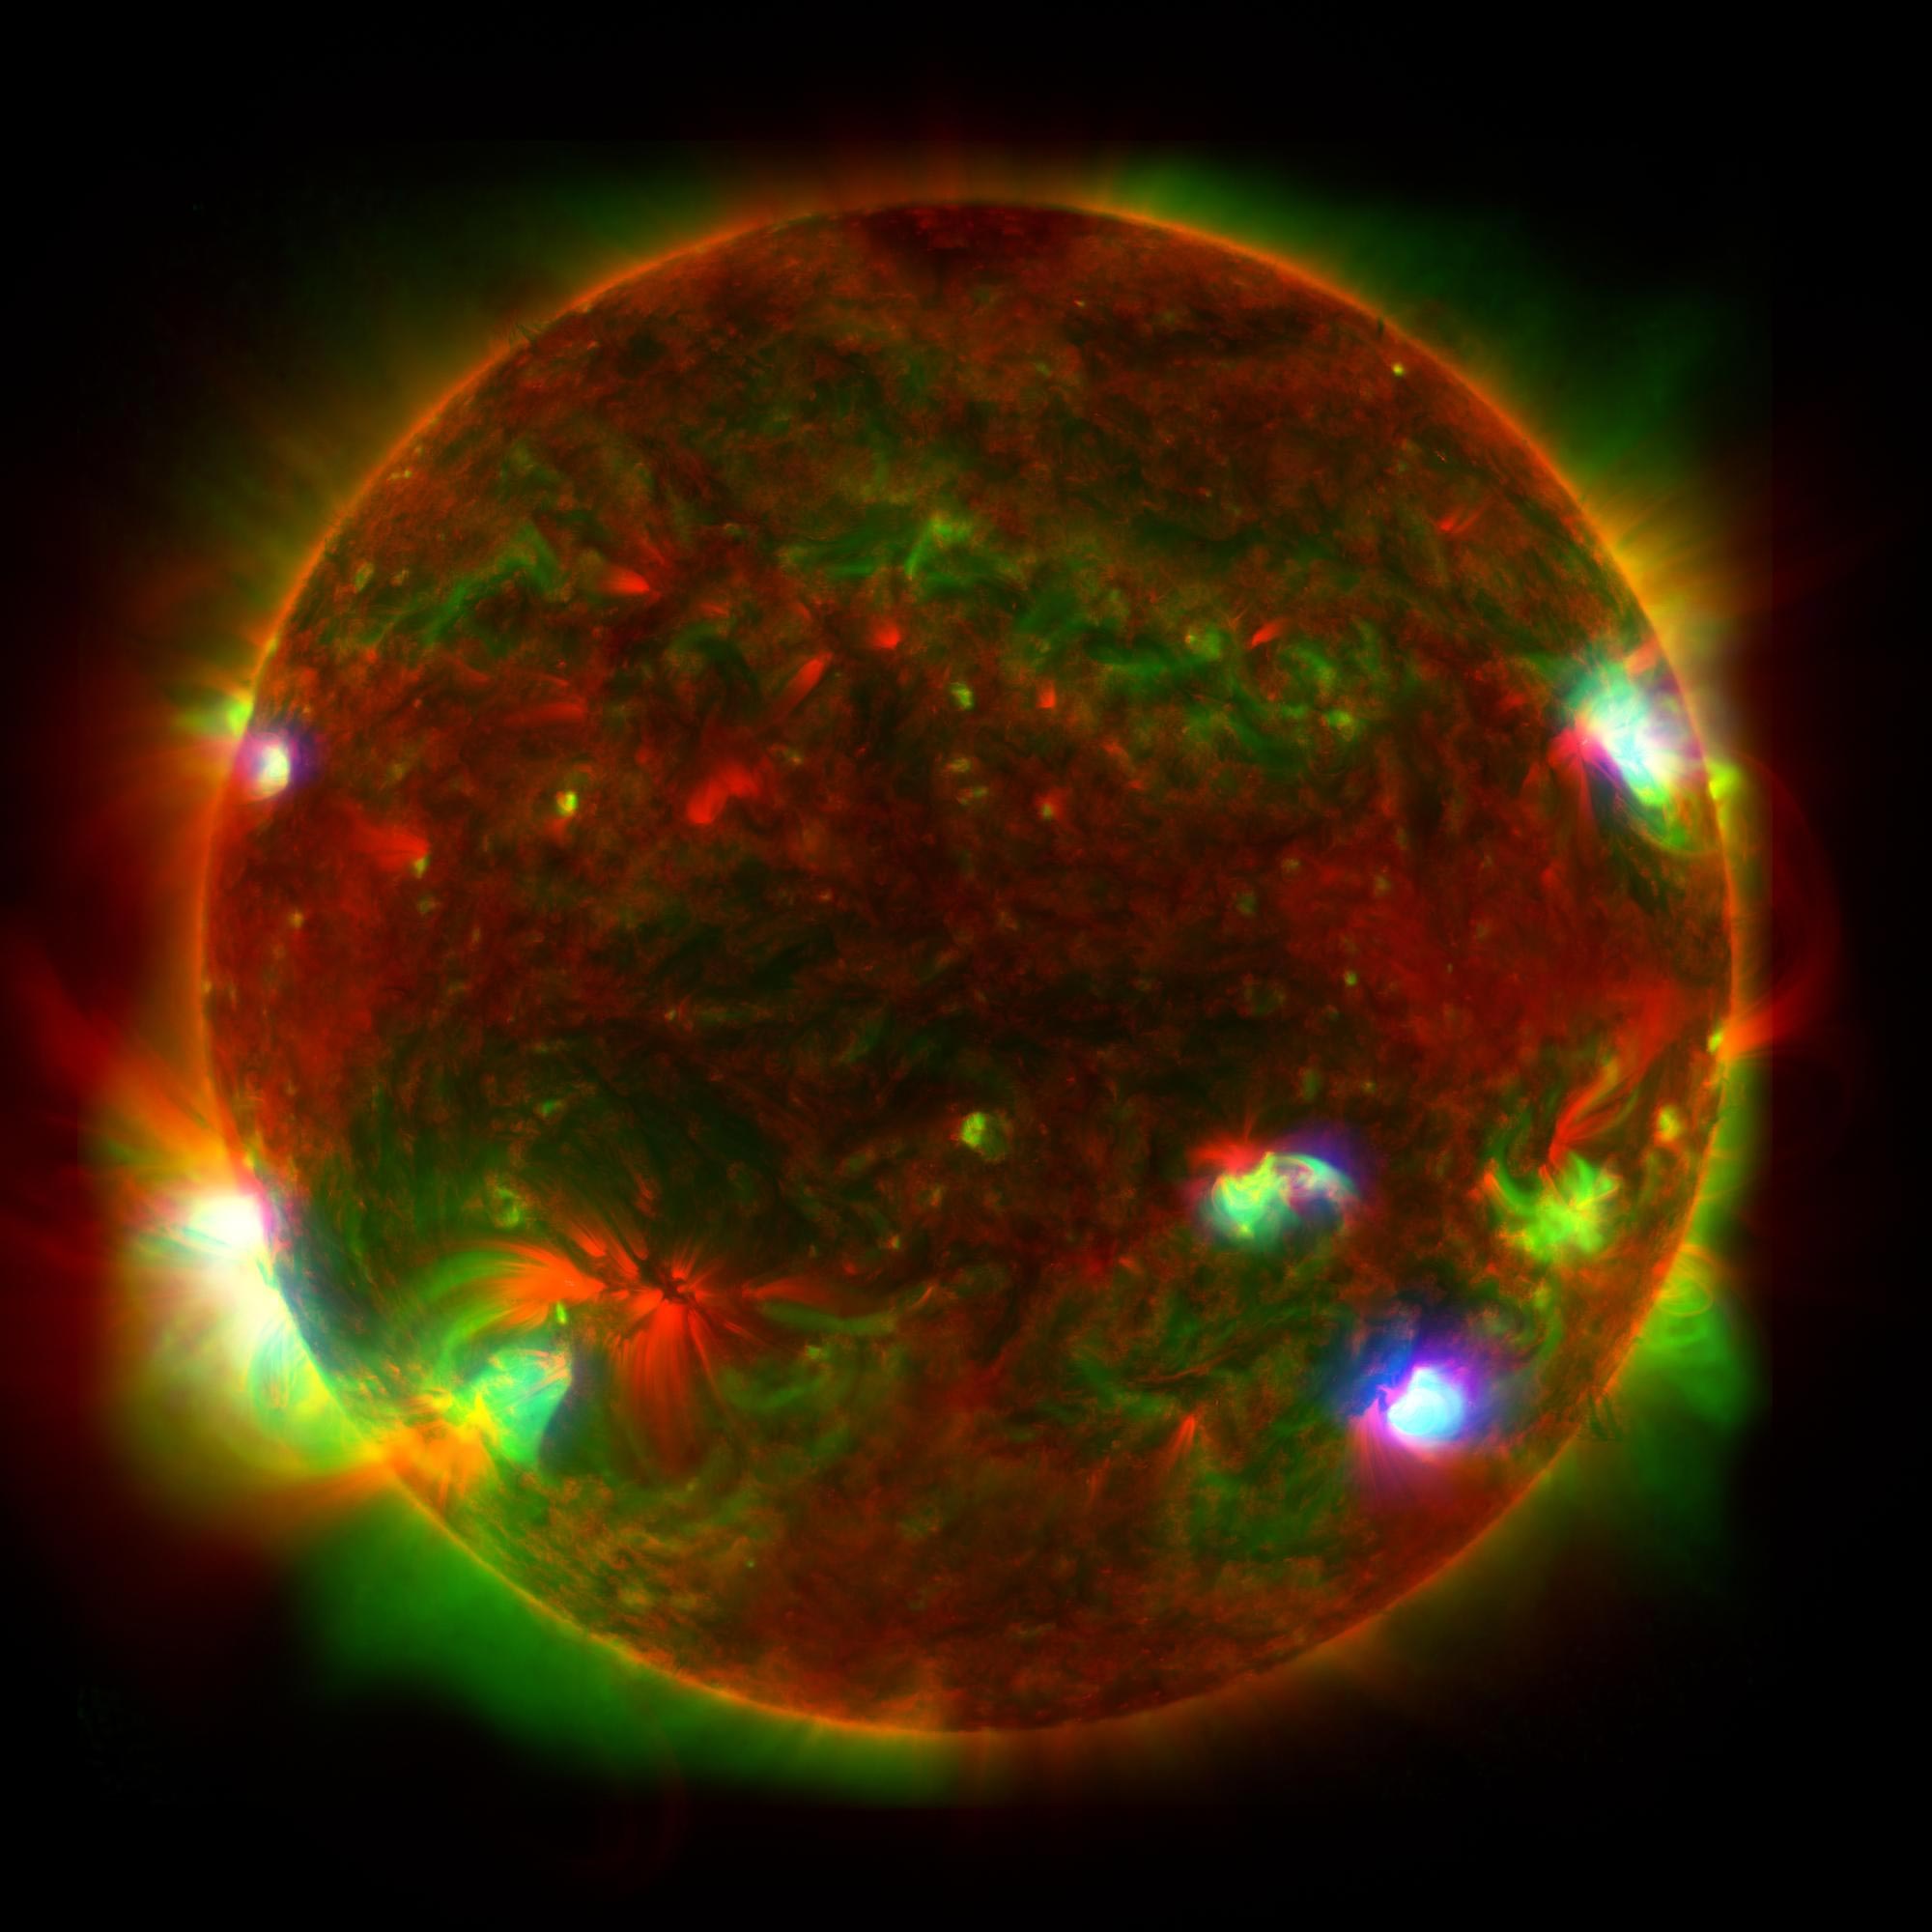 El Conjunto de Telescopios Espectroscópicos Nucleares de la NASA revela luces ocultas en el Sol